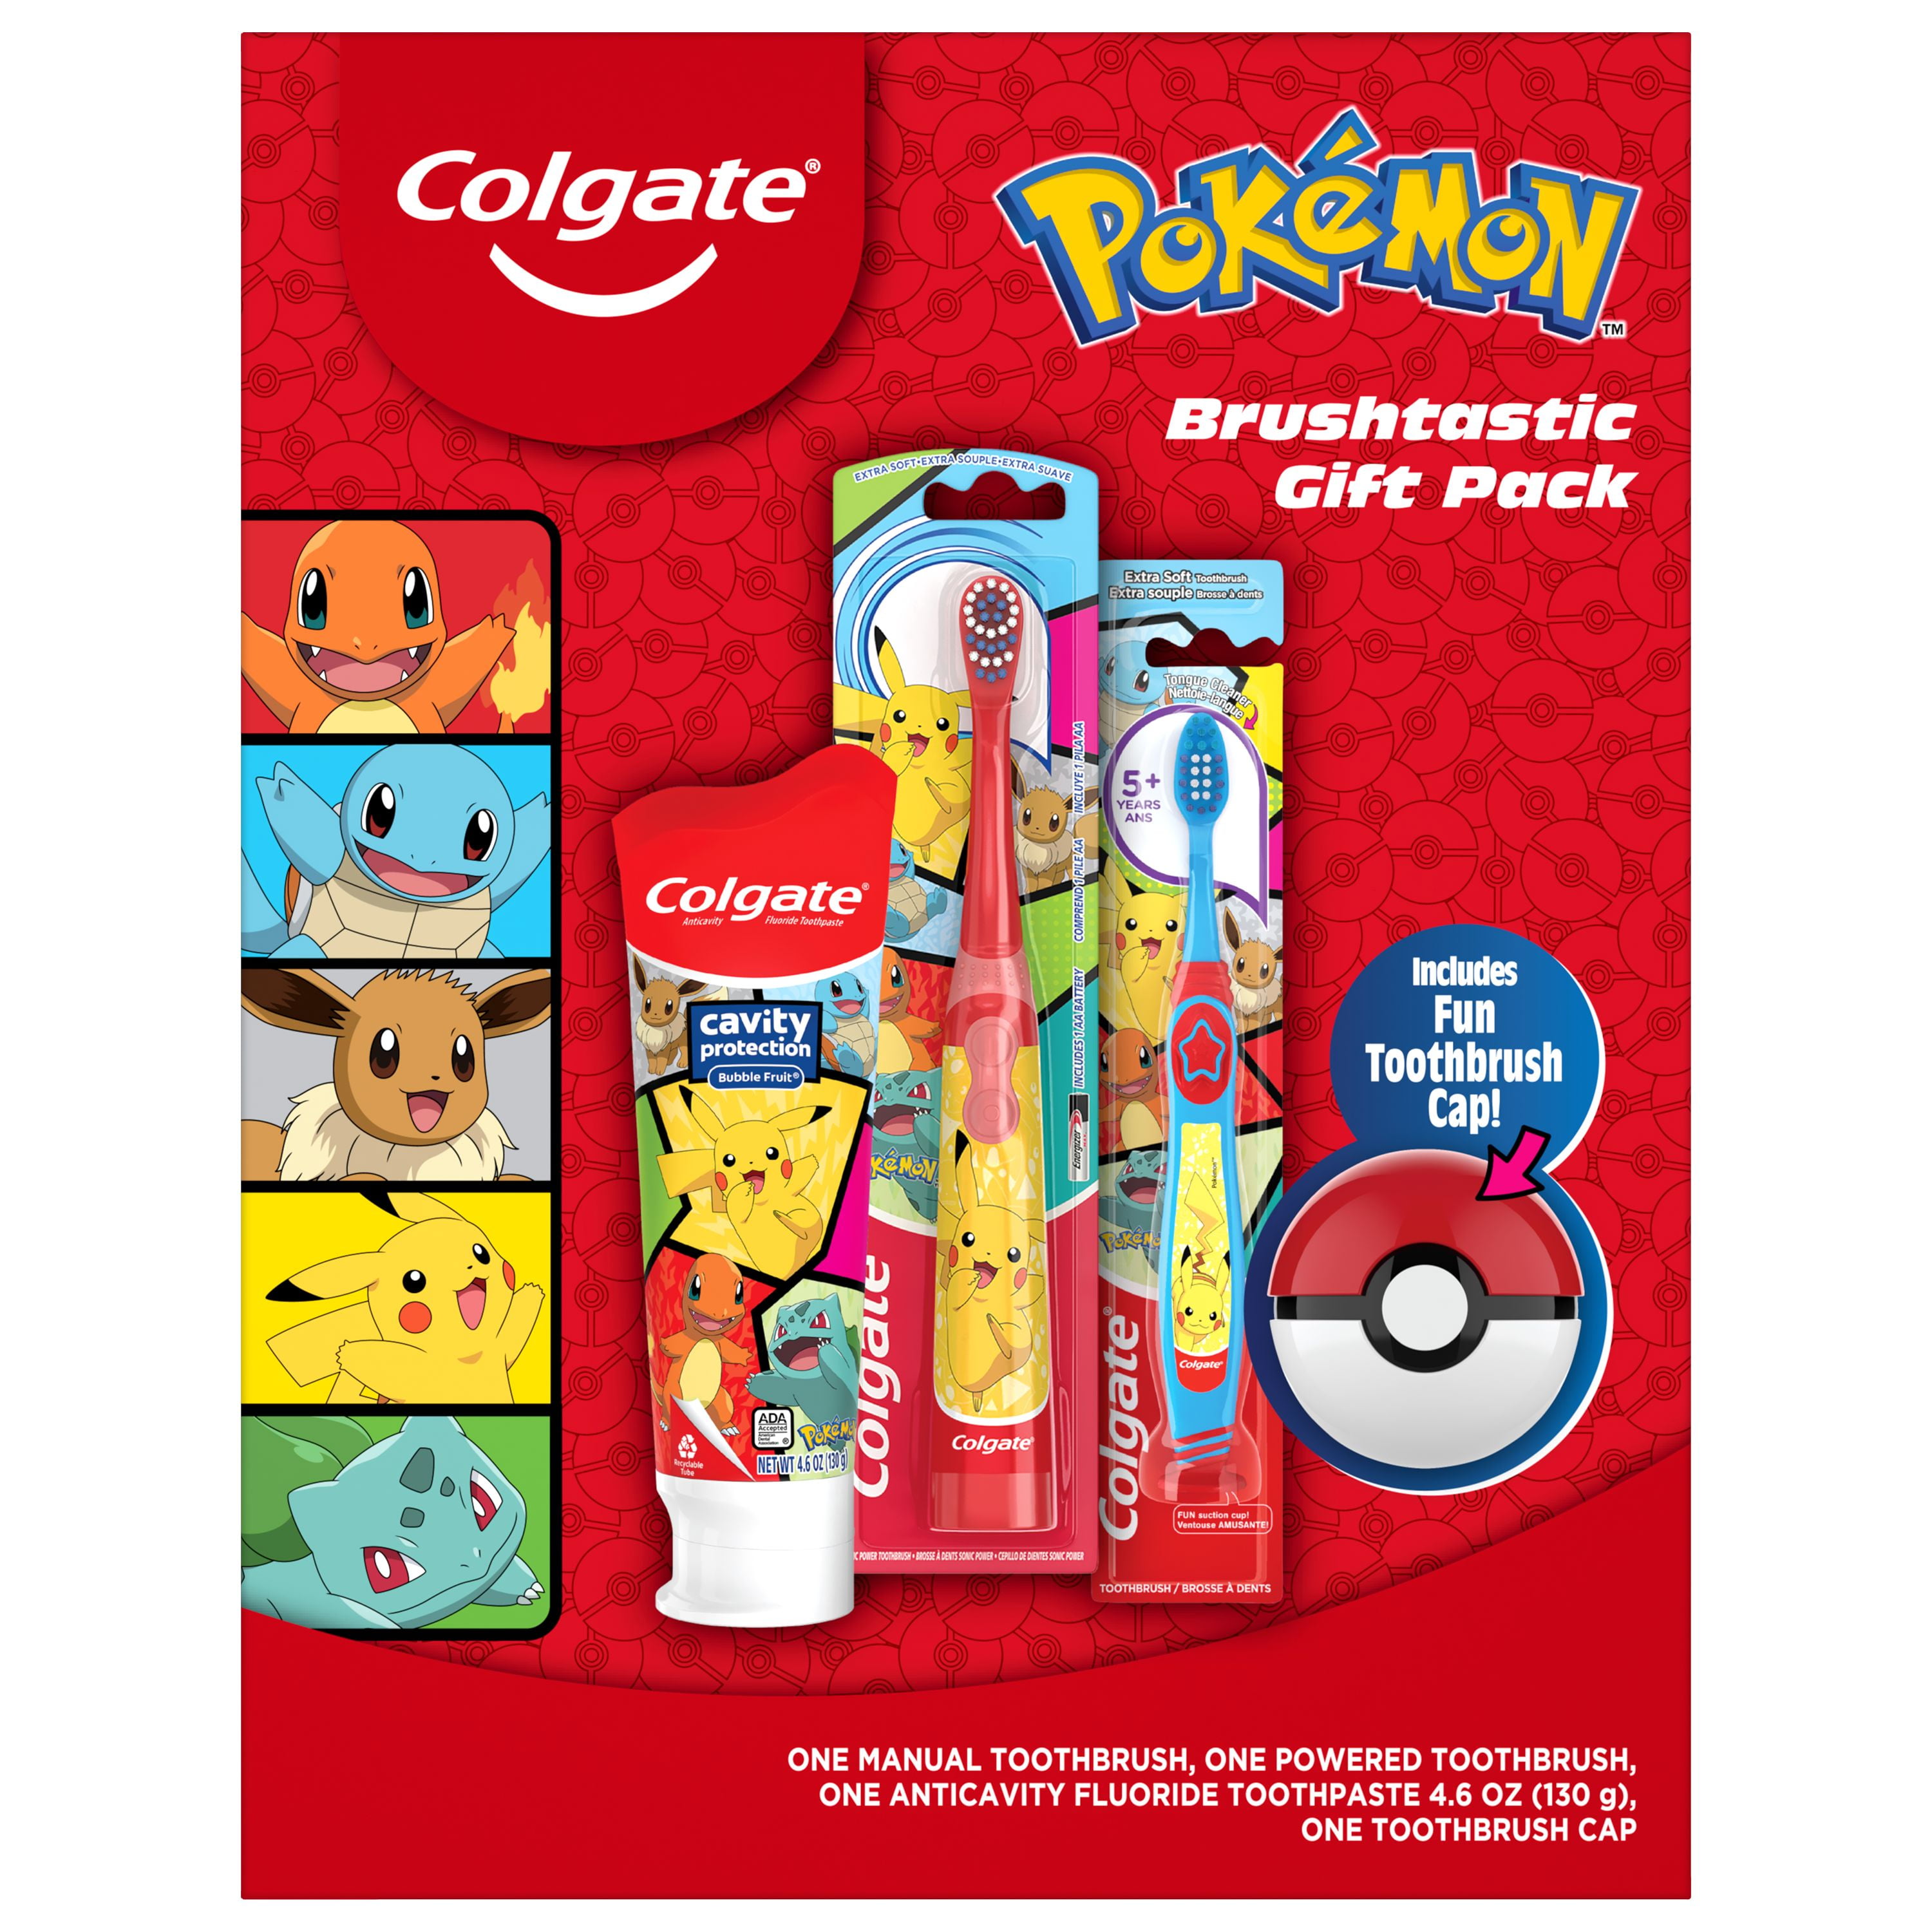 Colgate Kids Pokemon Gift Set, 1 Powered Toothbrush, 1 Manual Toothbrush, Toothpaste